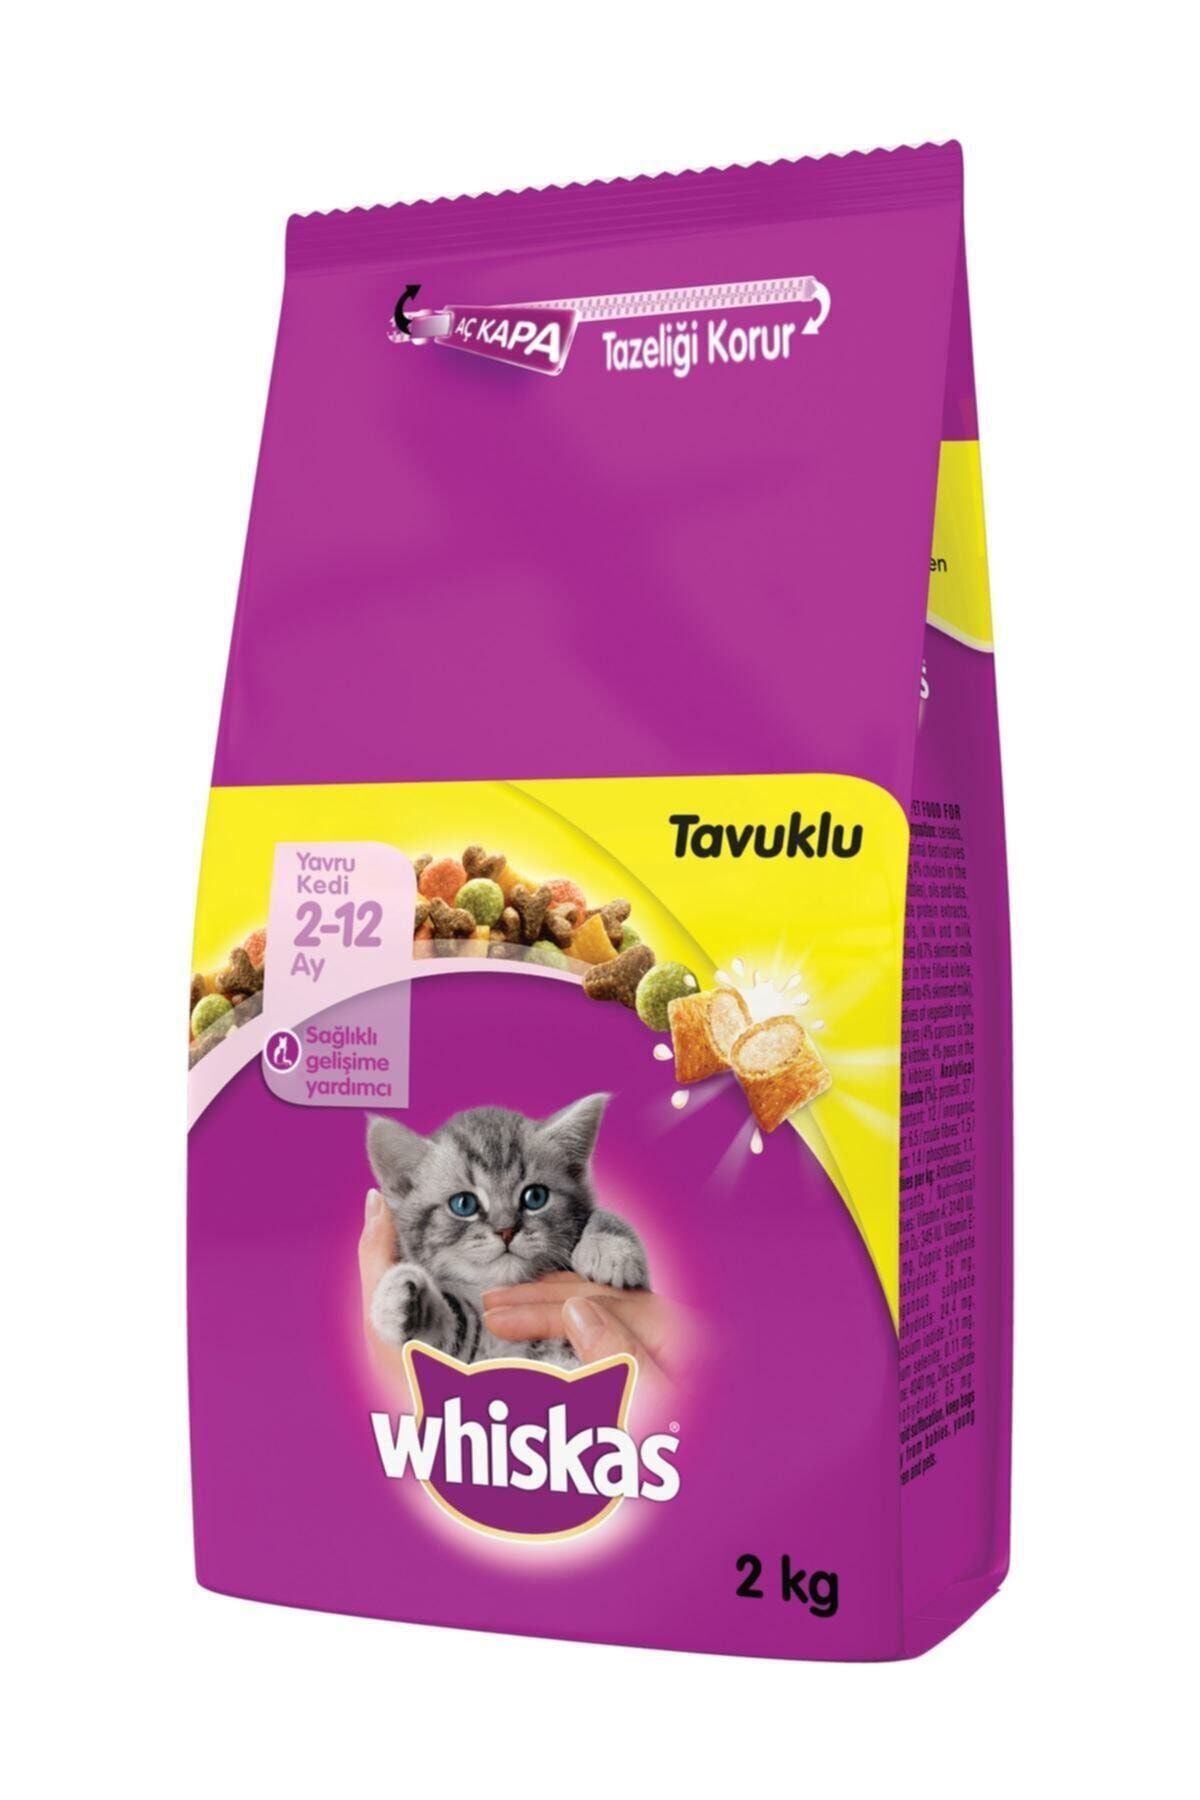 Whiskas Yavru Tavuklu Kuru Kedi Maması 2 kg Fiyatı, Yorumları TRENDYOL